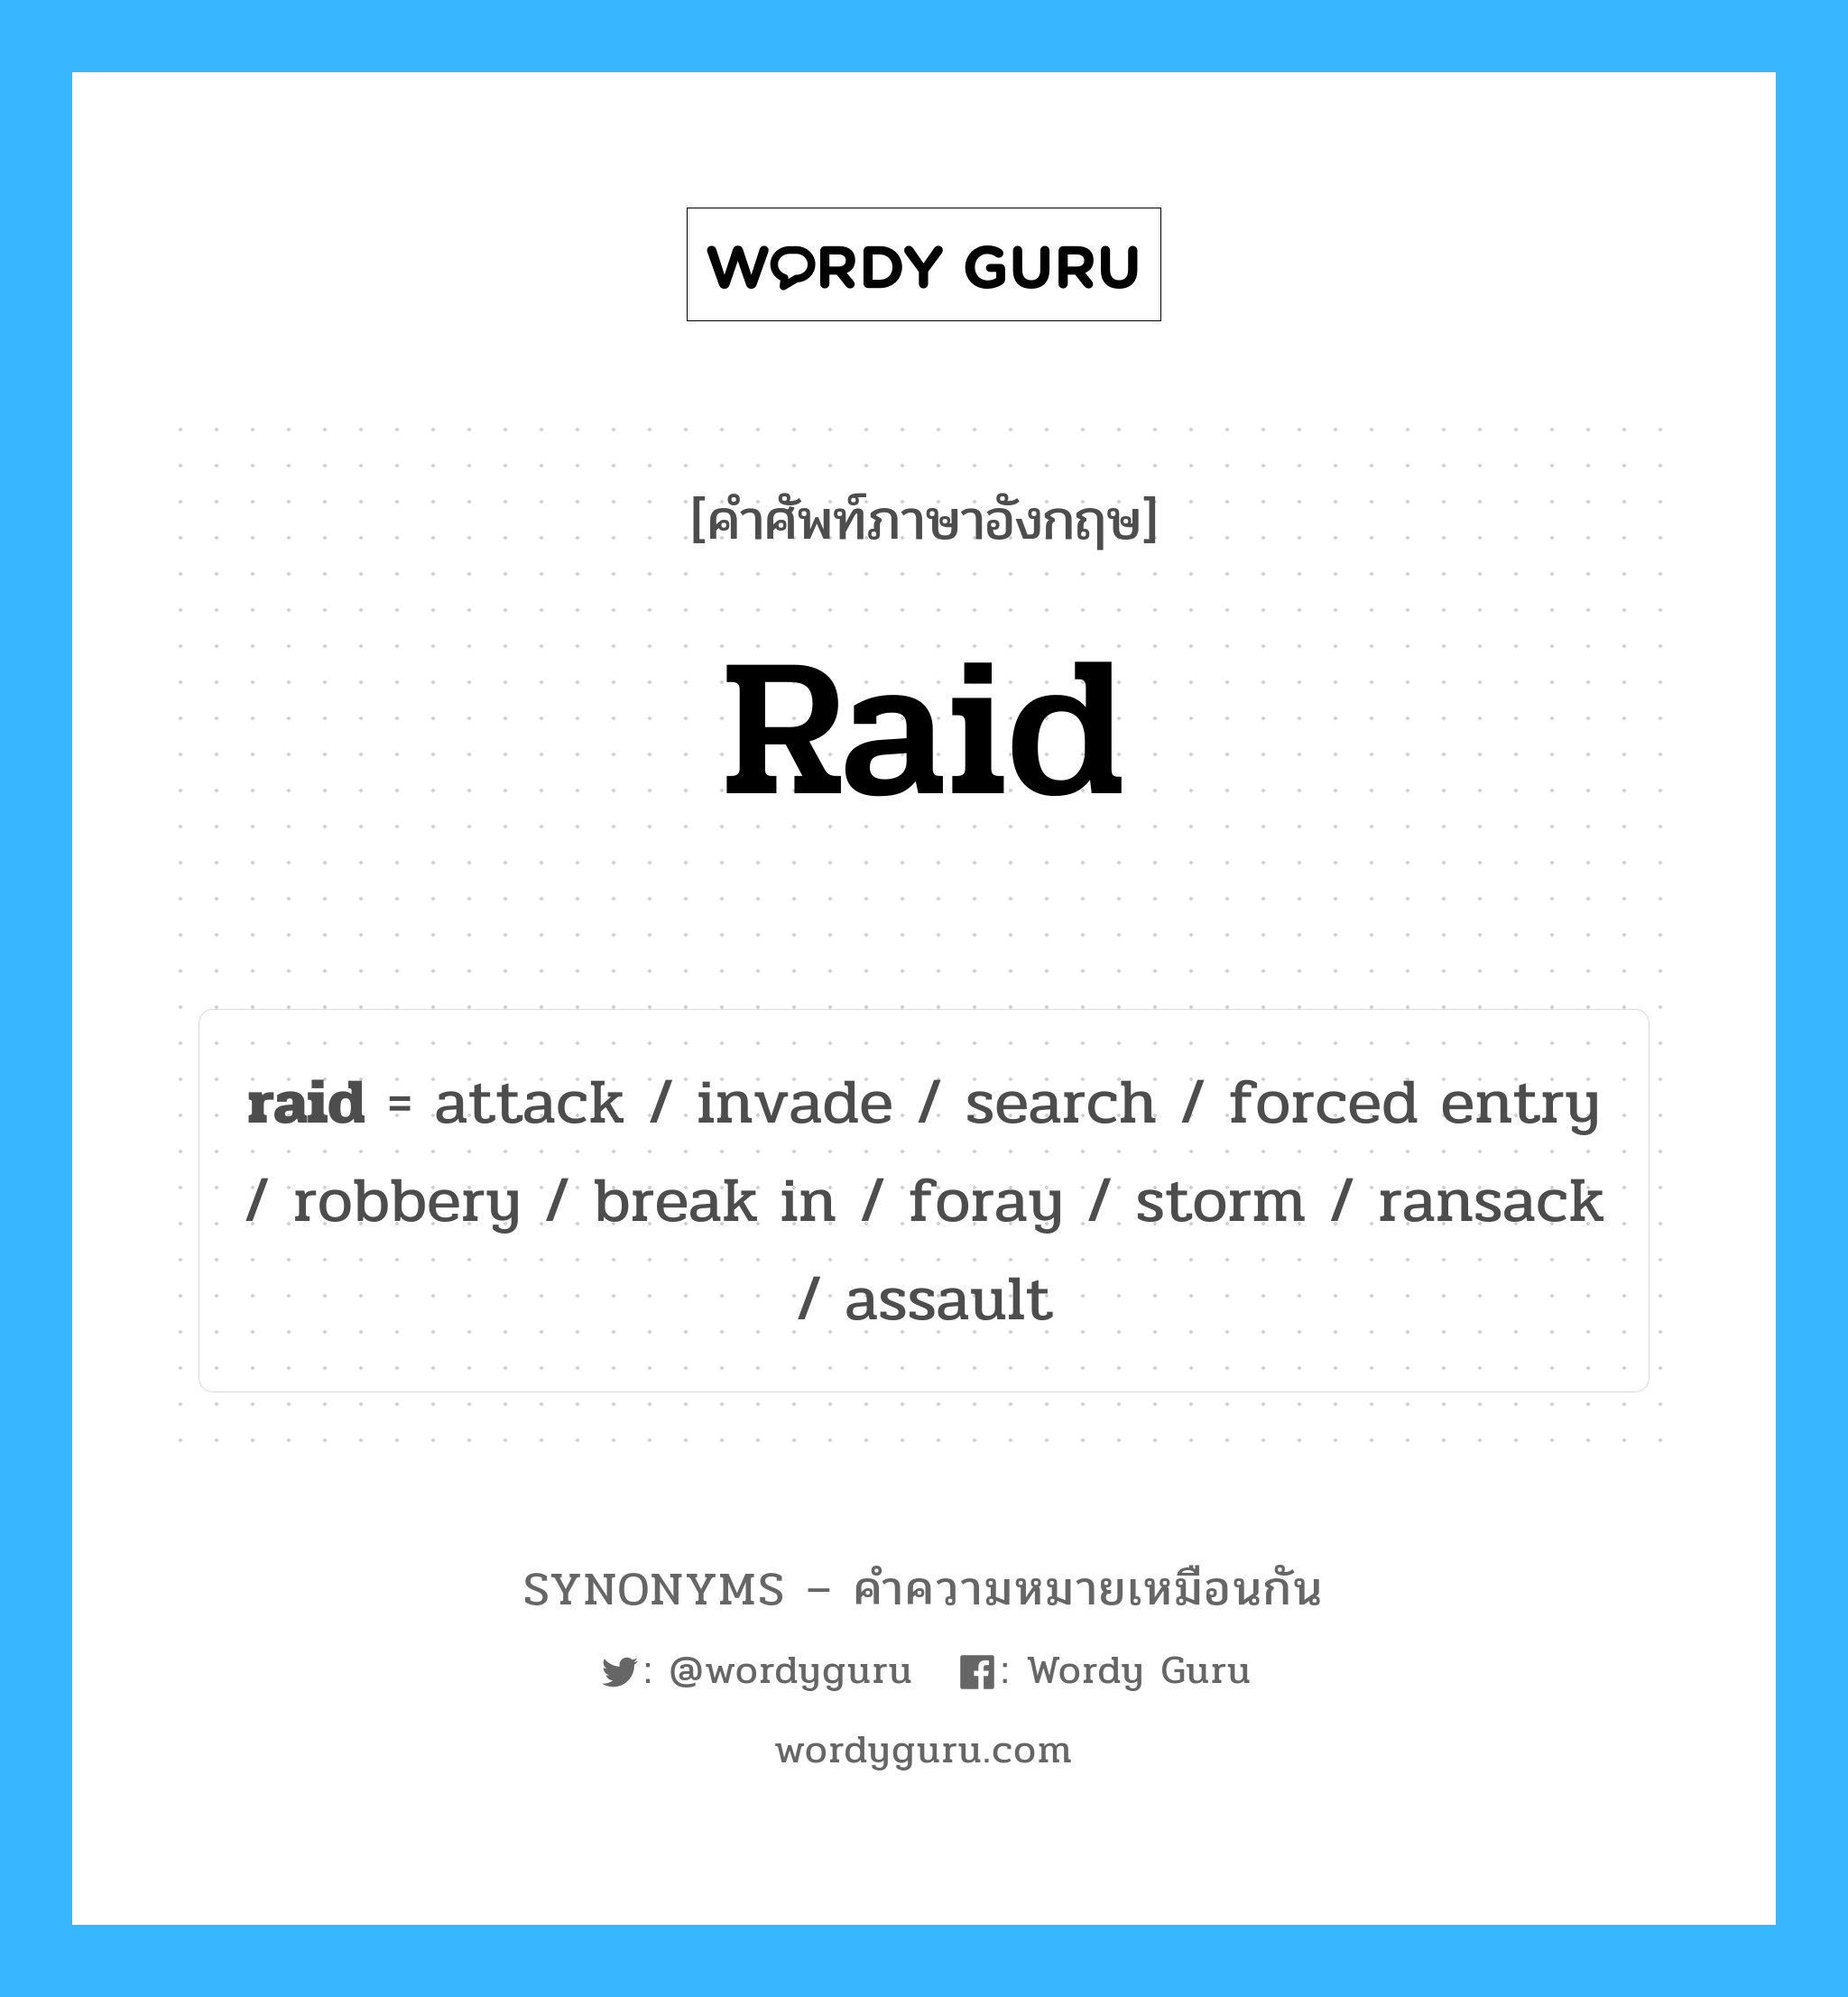 search เป็นหนึ่งใน raid และมีคำอื่น ๆ อีกดังนี้, คำศัพท์ภาษาอังกฤษ search ความหมายคล้ายกันกับ raid แปลว่า ค้นหา หมวด raid